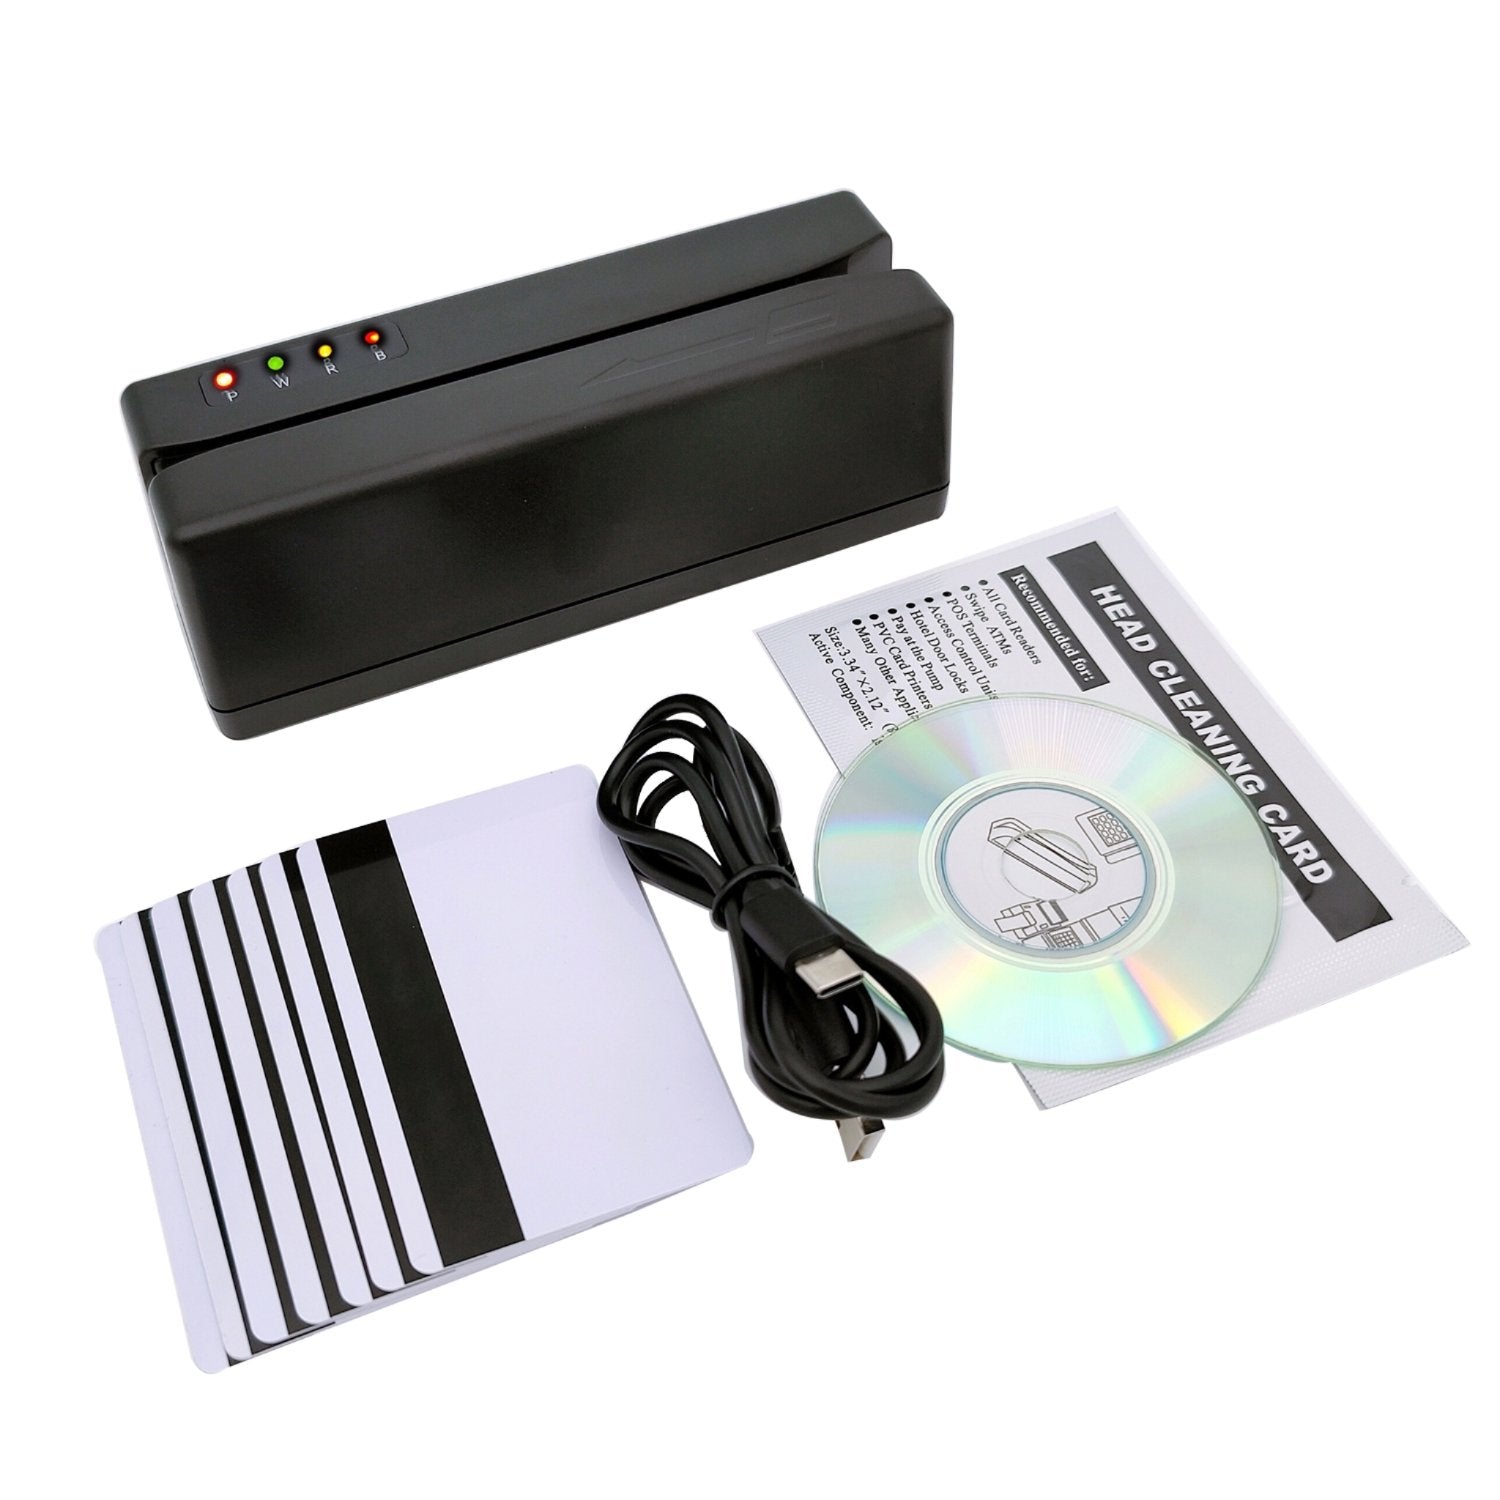 MSR606 Card Reader for Comupter, Magnetic Card Reader, Same as